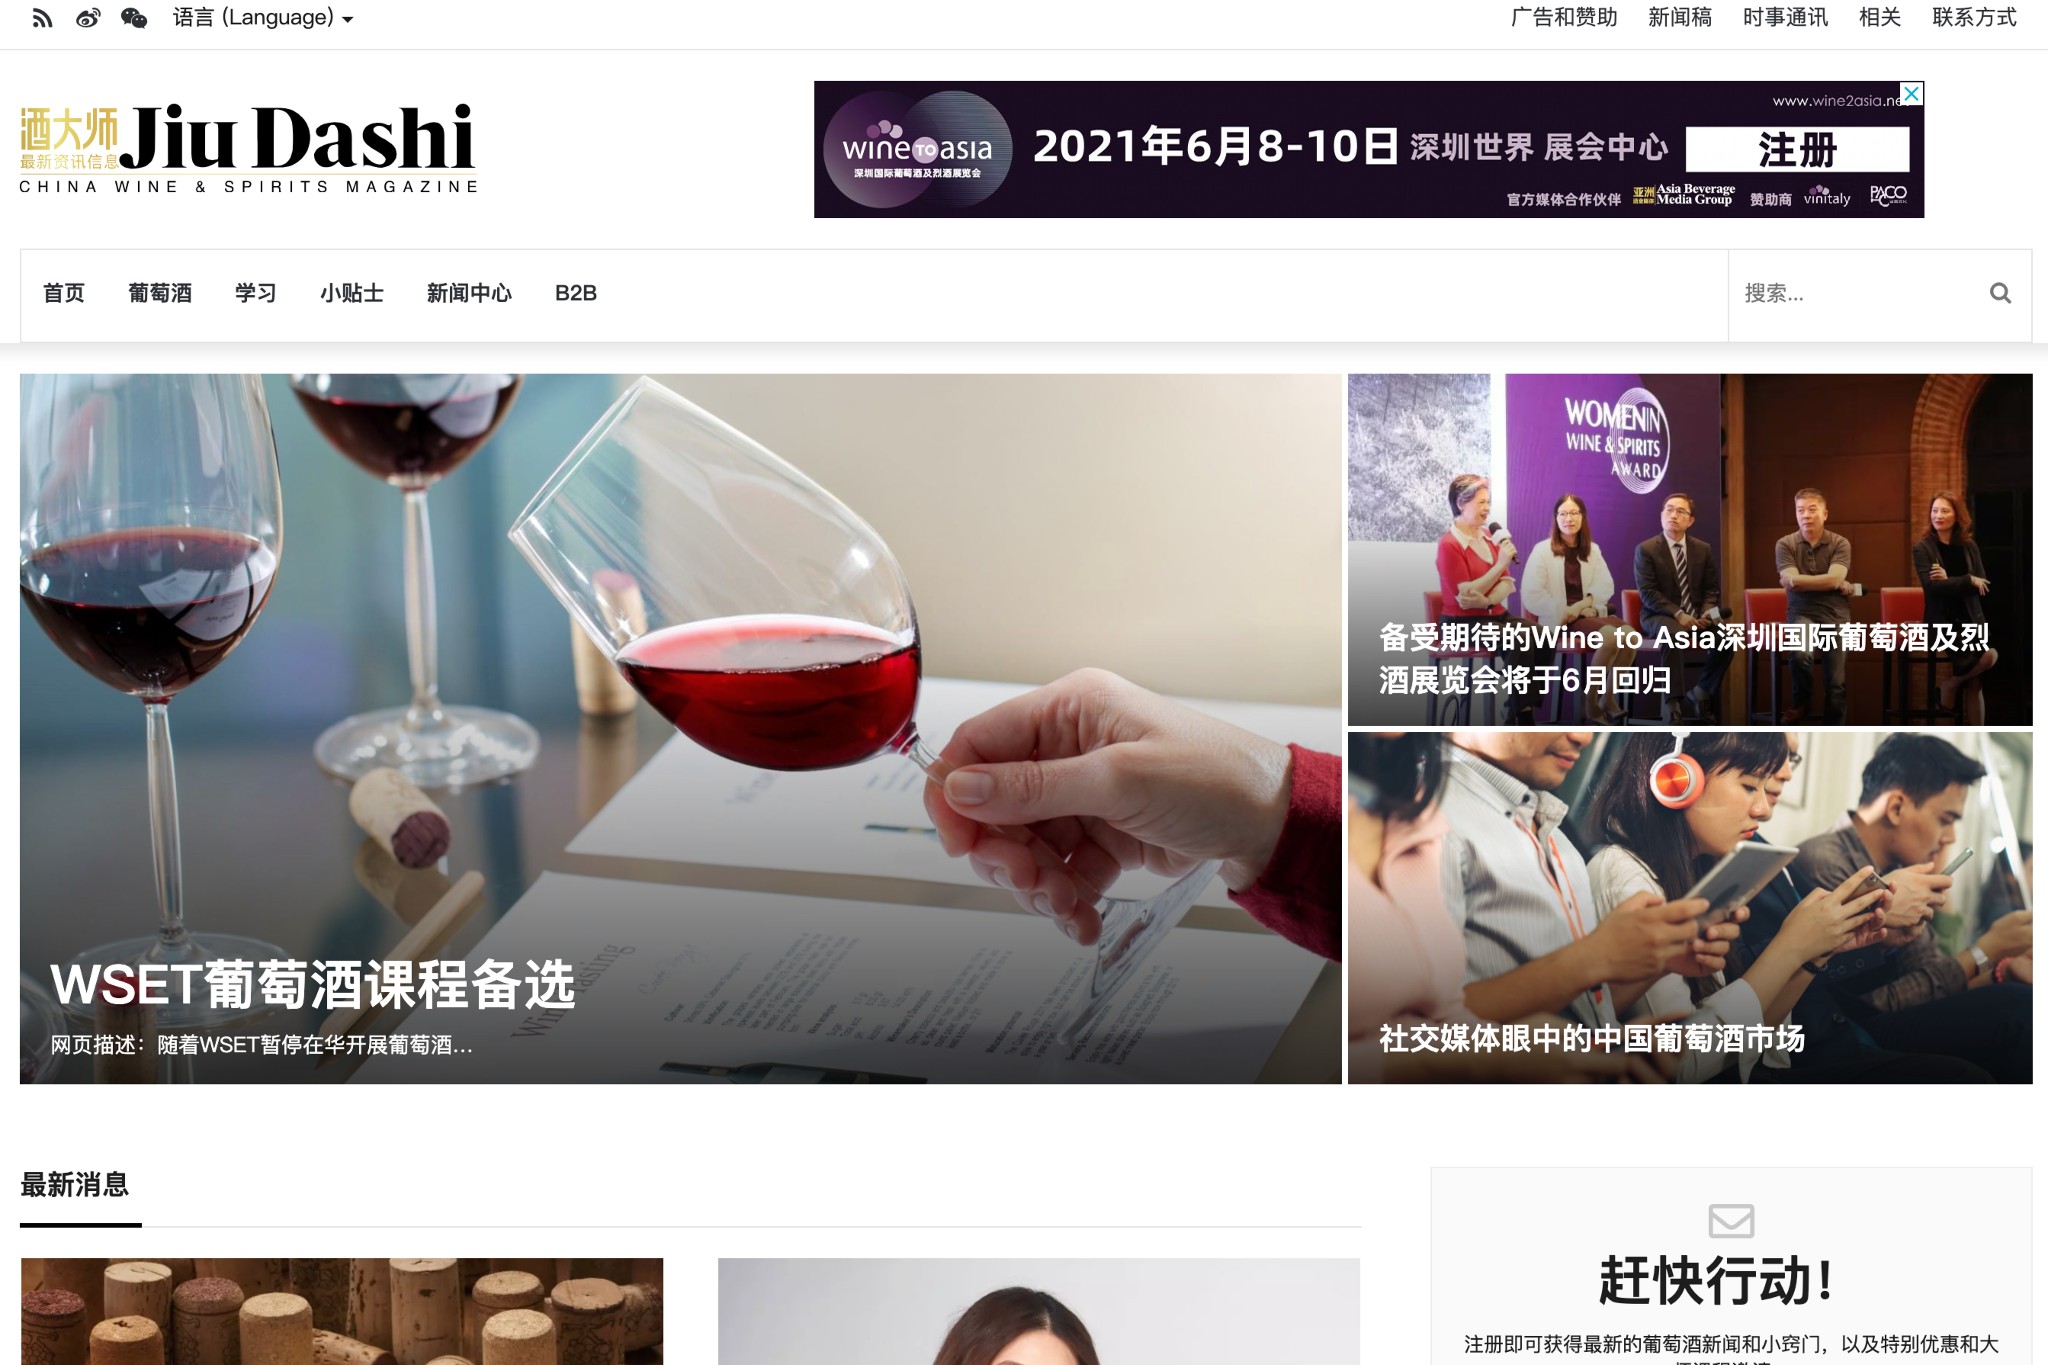 China’s Newest Wine & Spirits Magazine Now Online